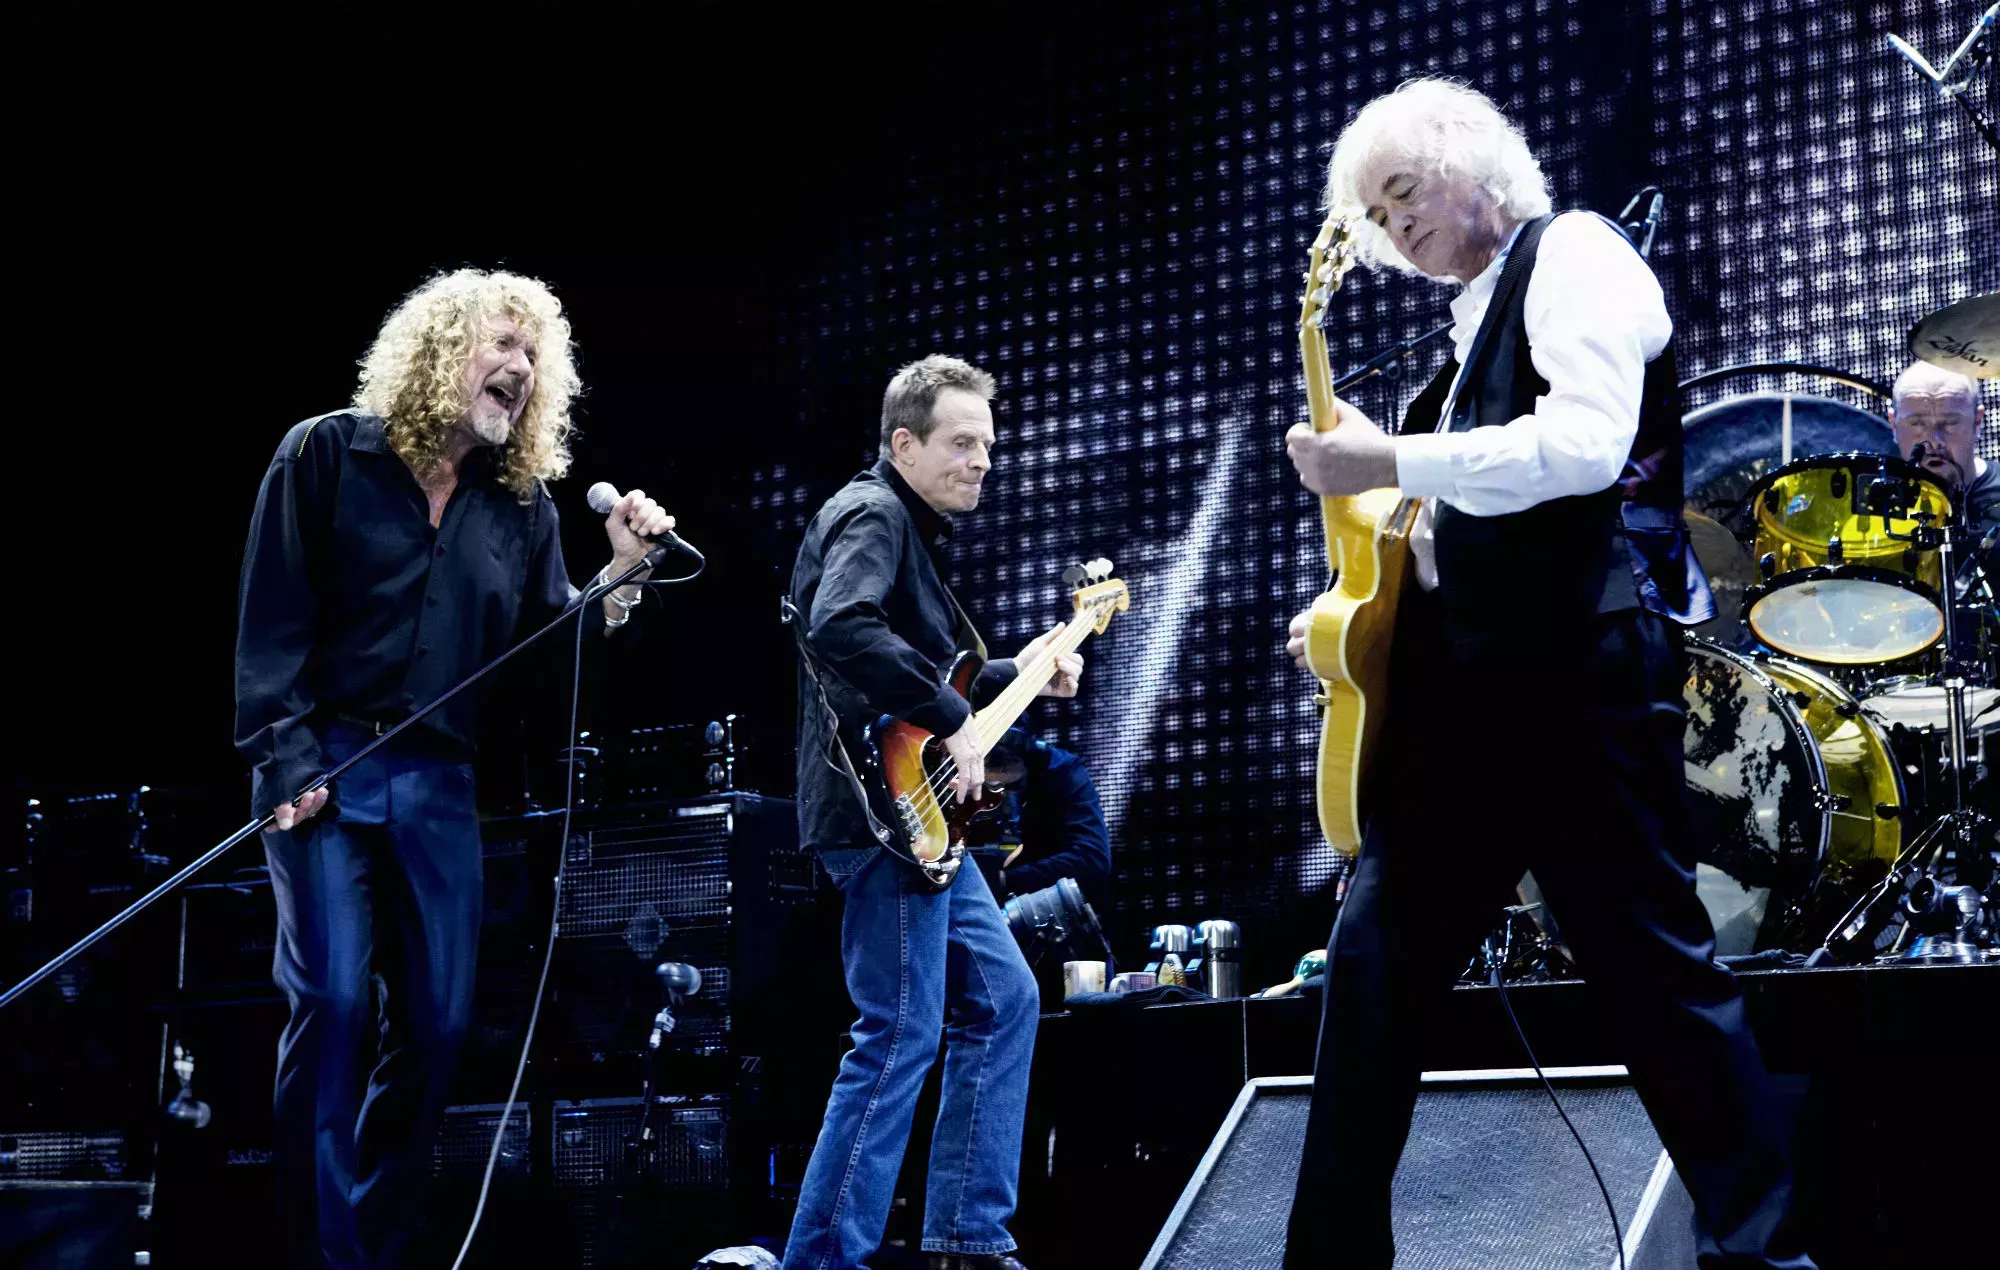 Led Zeppelin retransmitirá gratuitamente el concierto de reunión de 2007 para celebrar su 15º aniversario